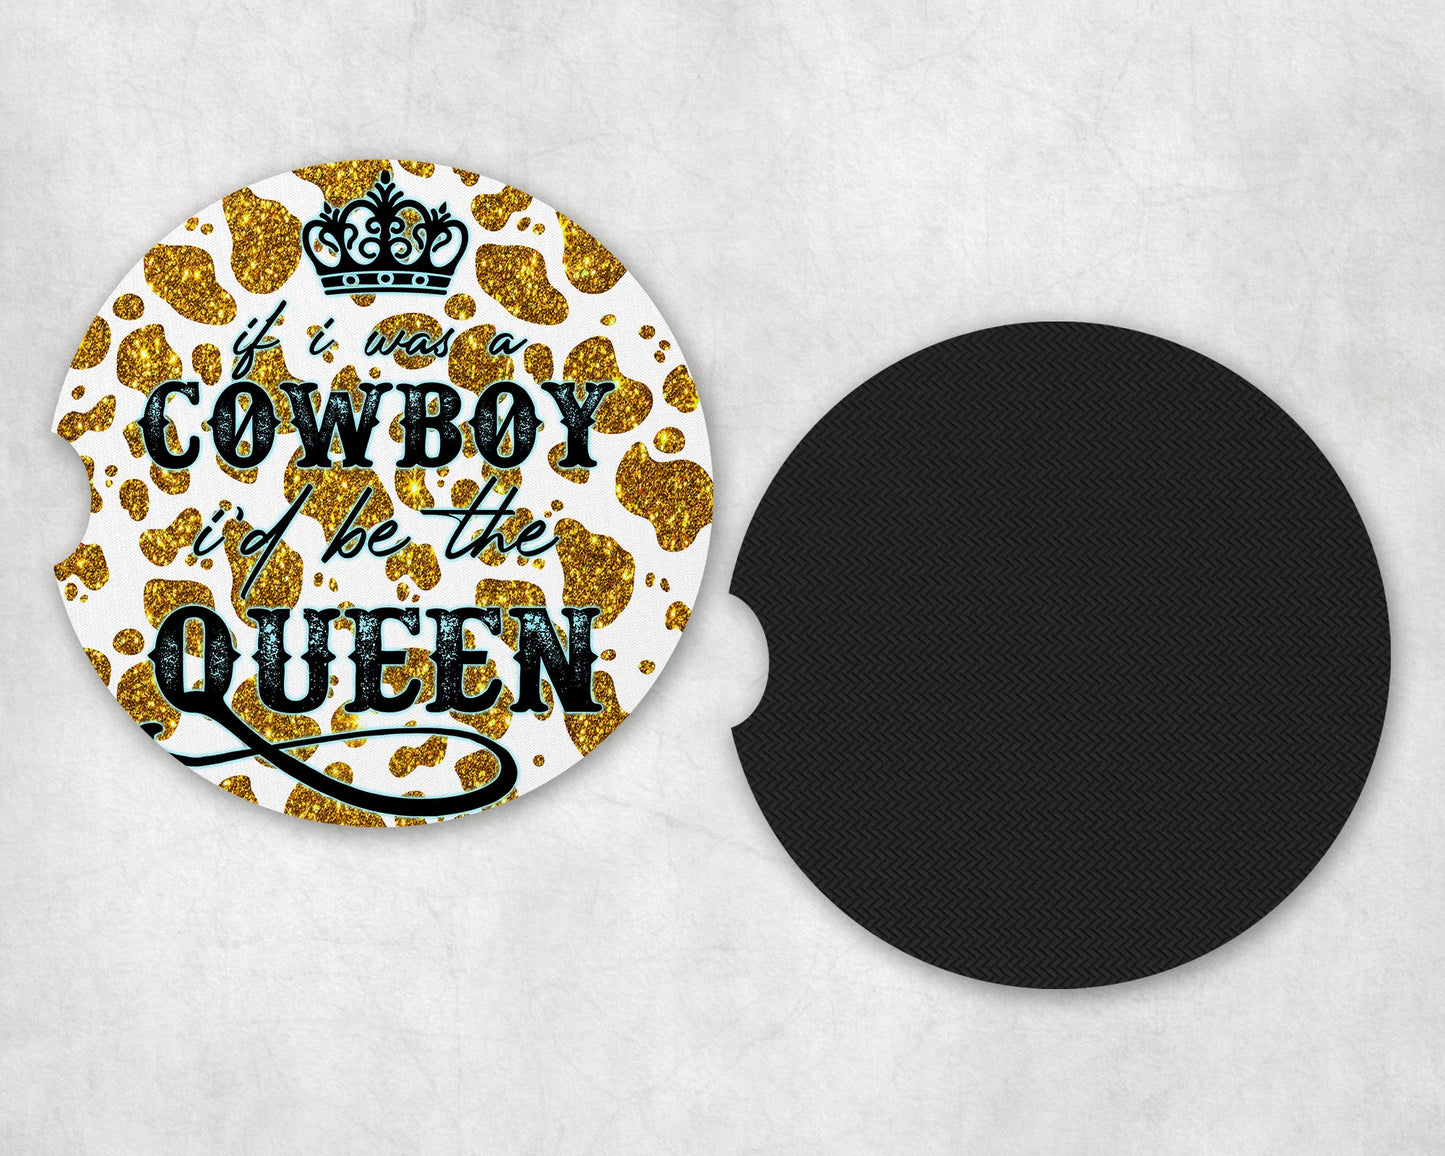 If I Was a Cowboy I’d Be The Queen|Car Coaster Set - Car Coaster